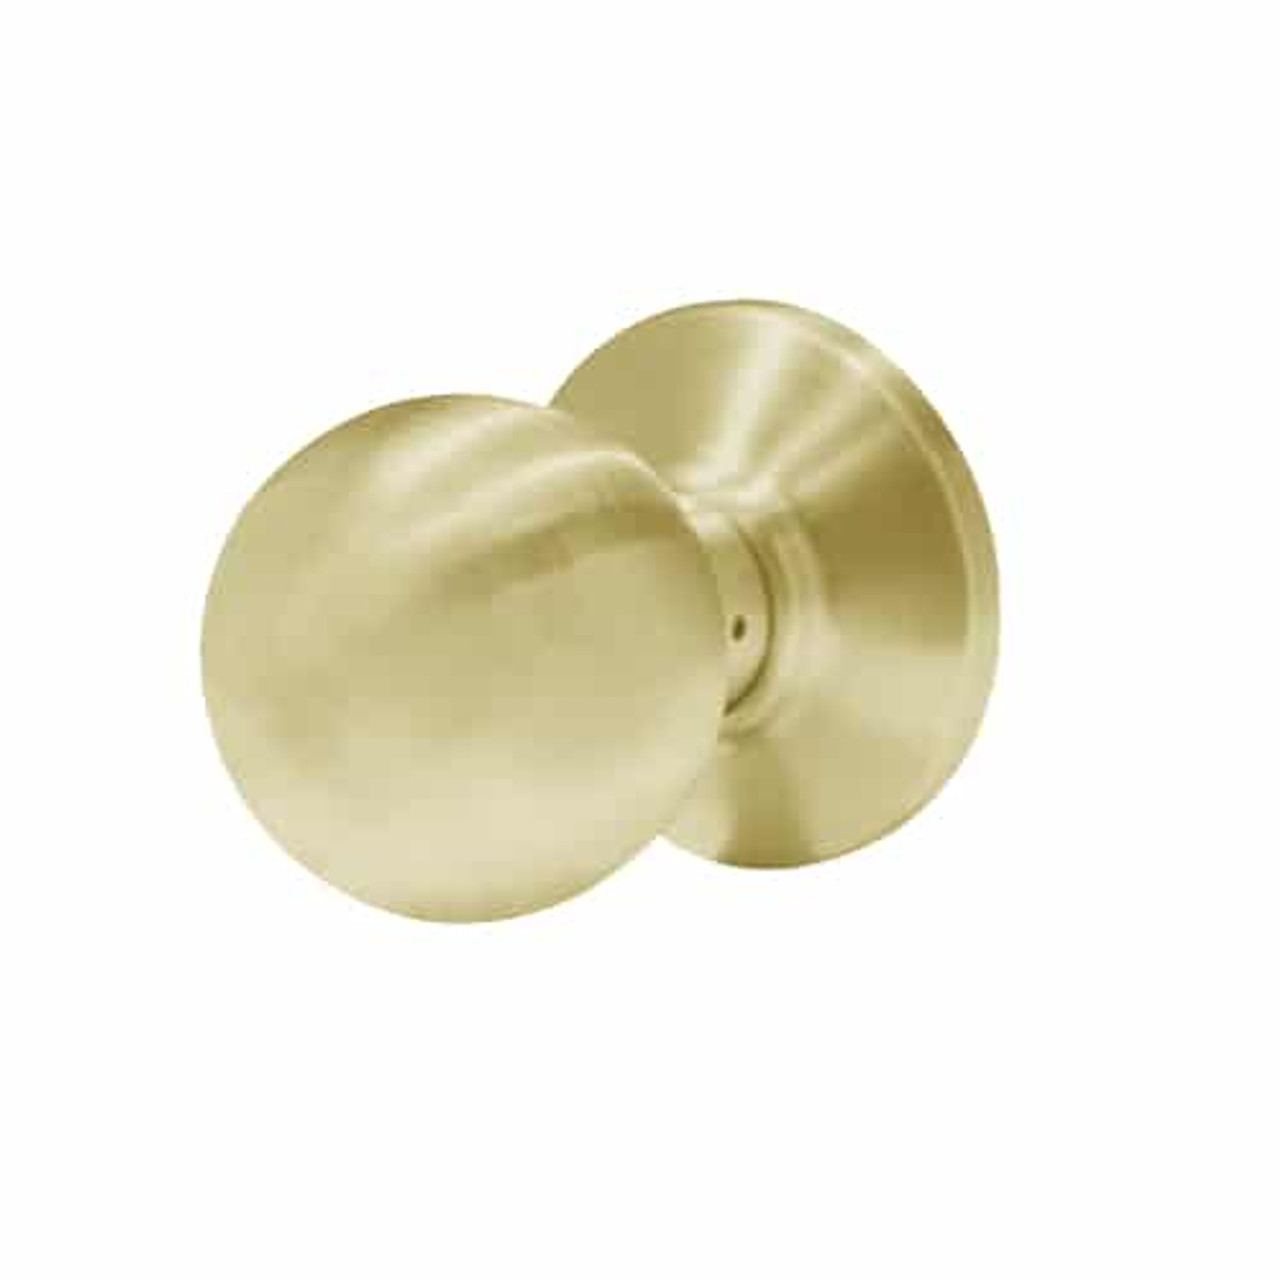 6K30N4CS3606 Best 6K Series Passage Medium Duty Cylindrical Knob Locks with Round Style in Satin Brass